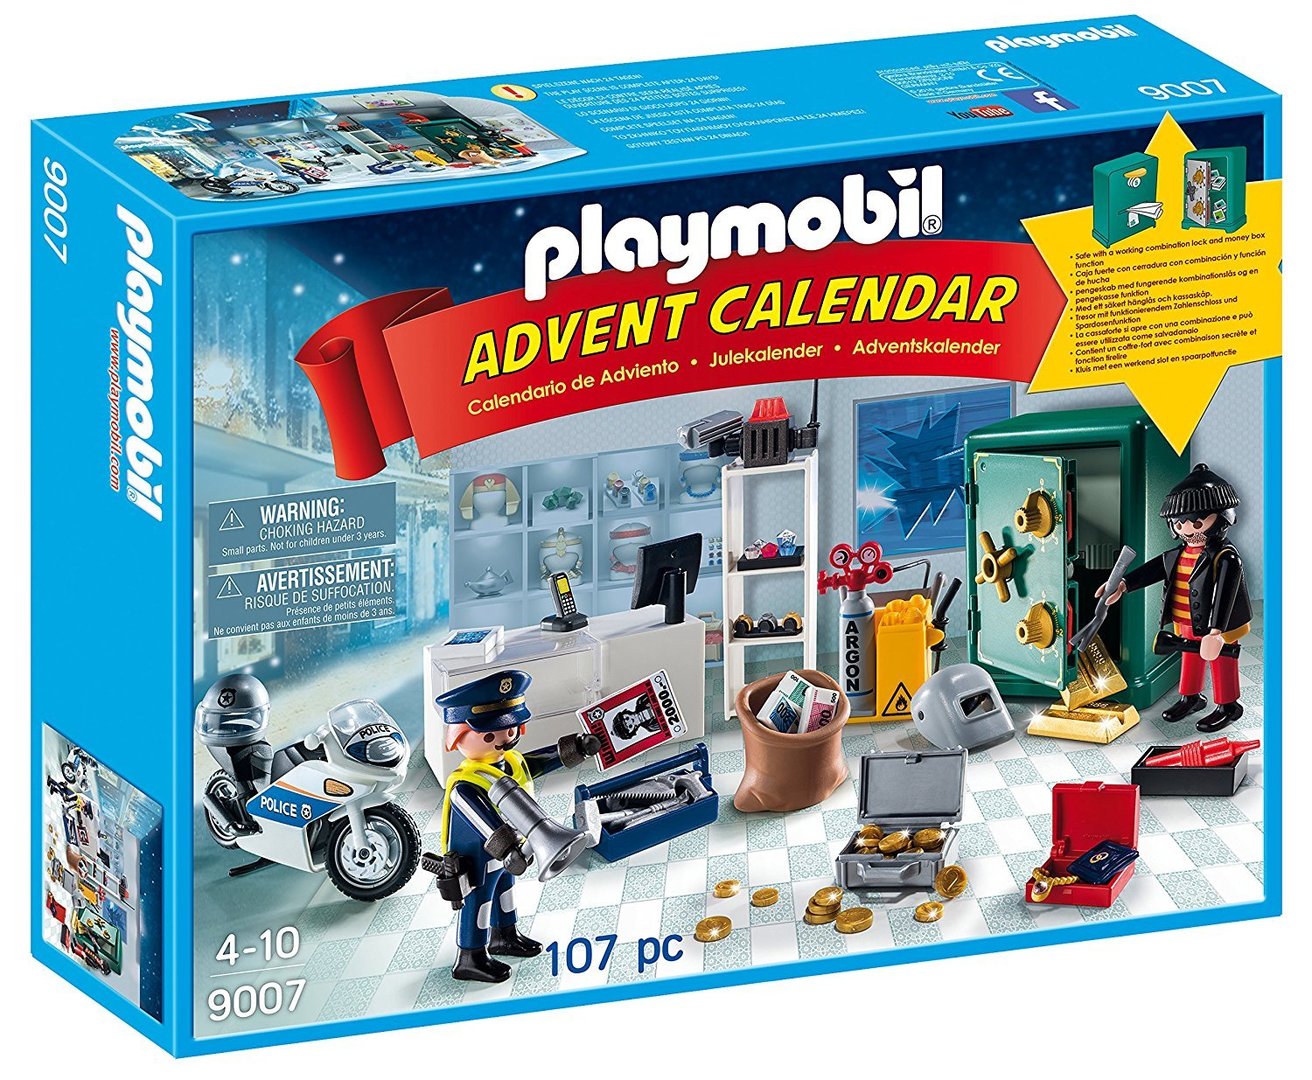 Pesimista tobillo línea Playmobil 9007 - Calendario de adviento robo en la joyería - I61